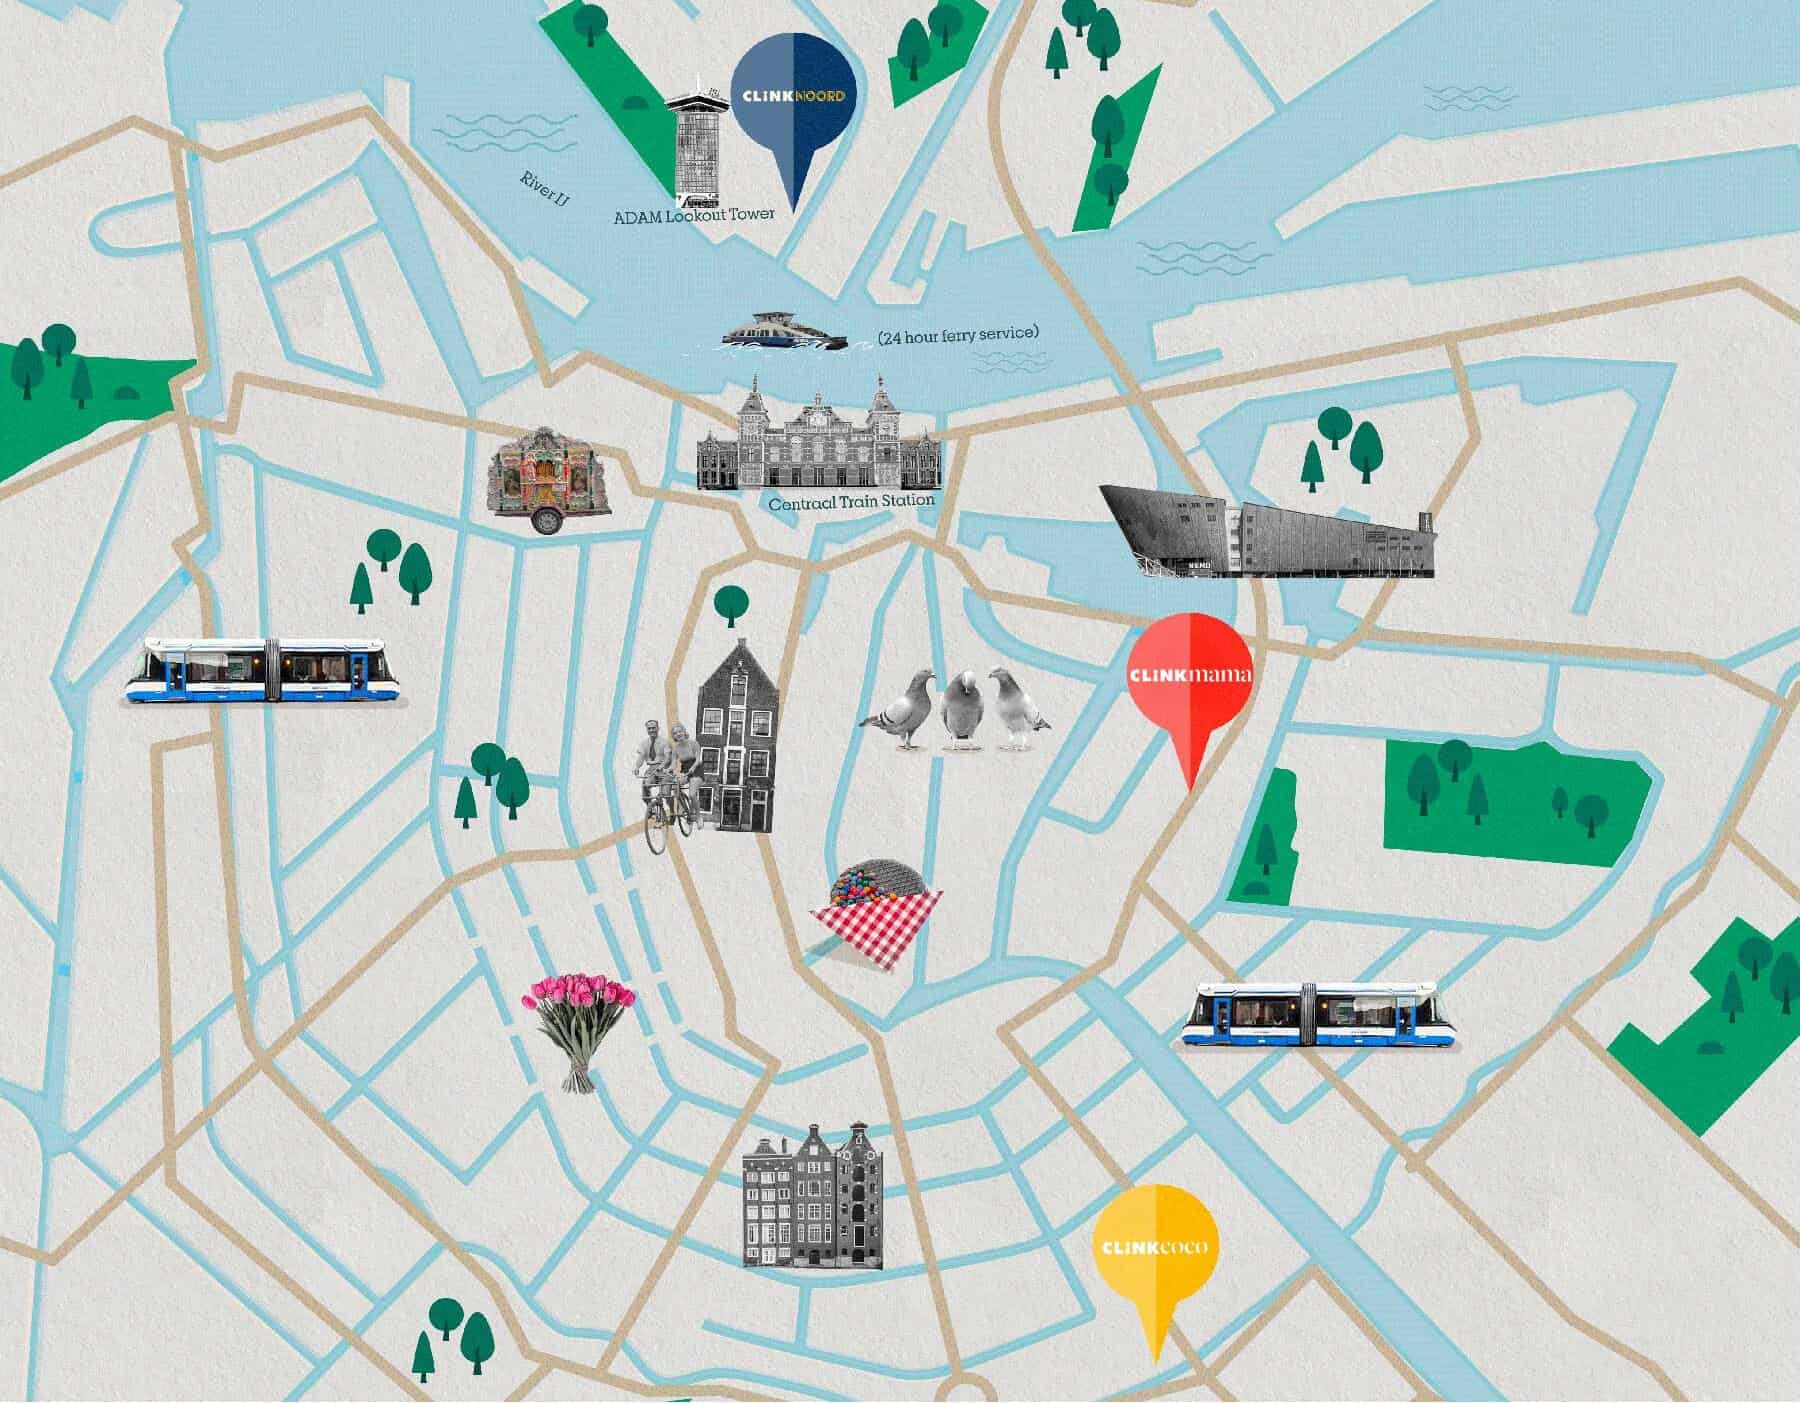 Mappa di Amsterdam con ClinkNOORD, ClinkMama, ClinkCoco e attrazioni turistiche